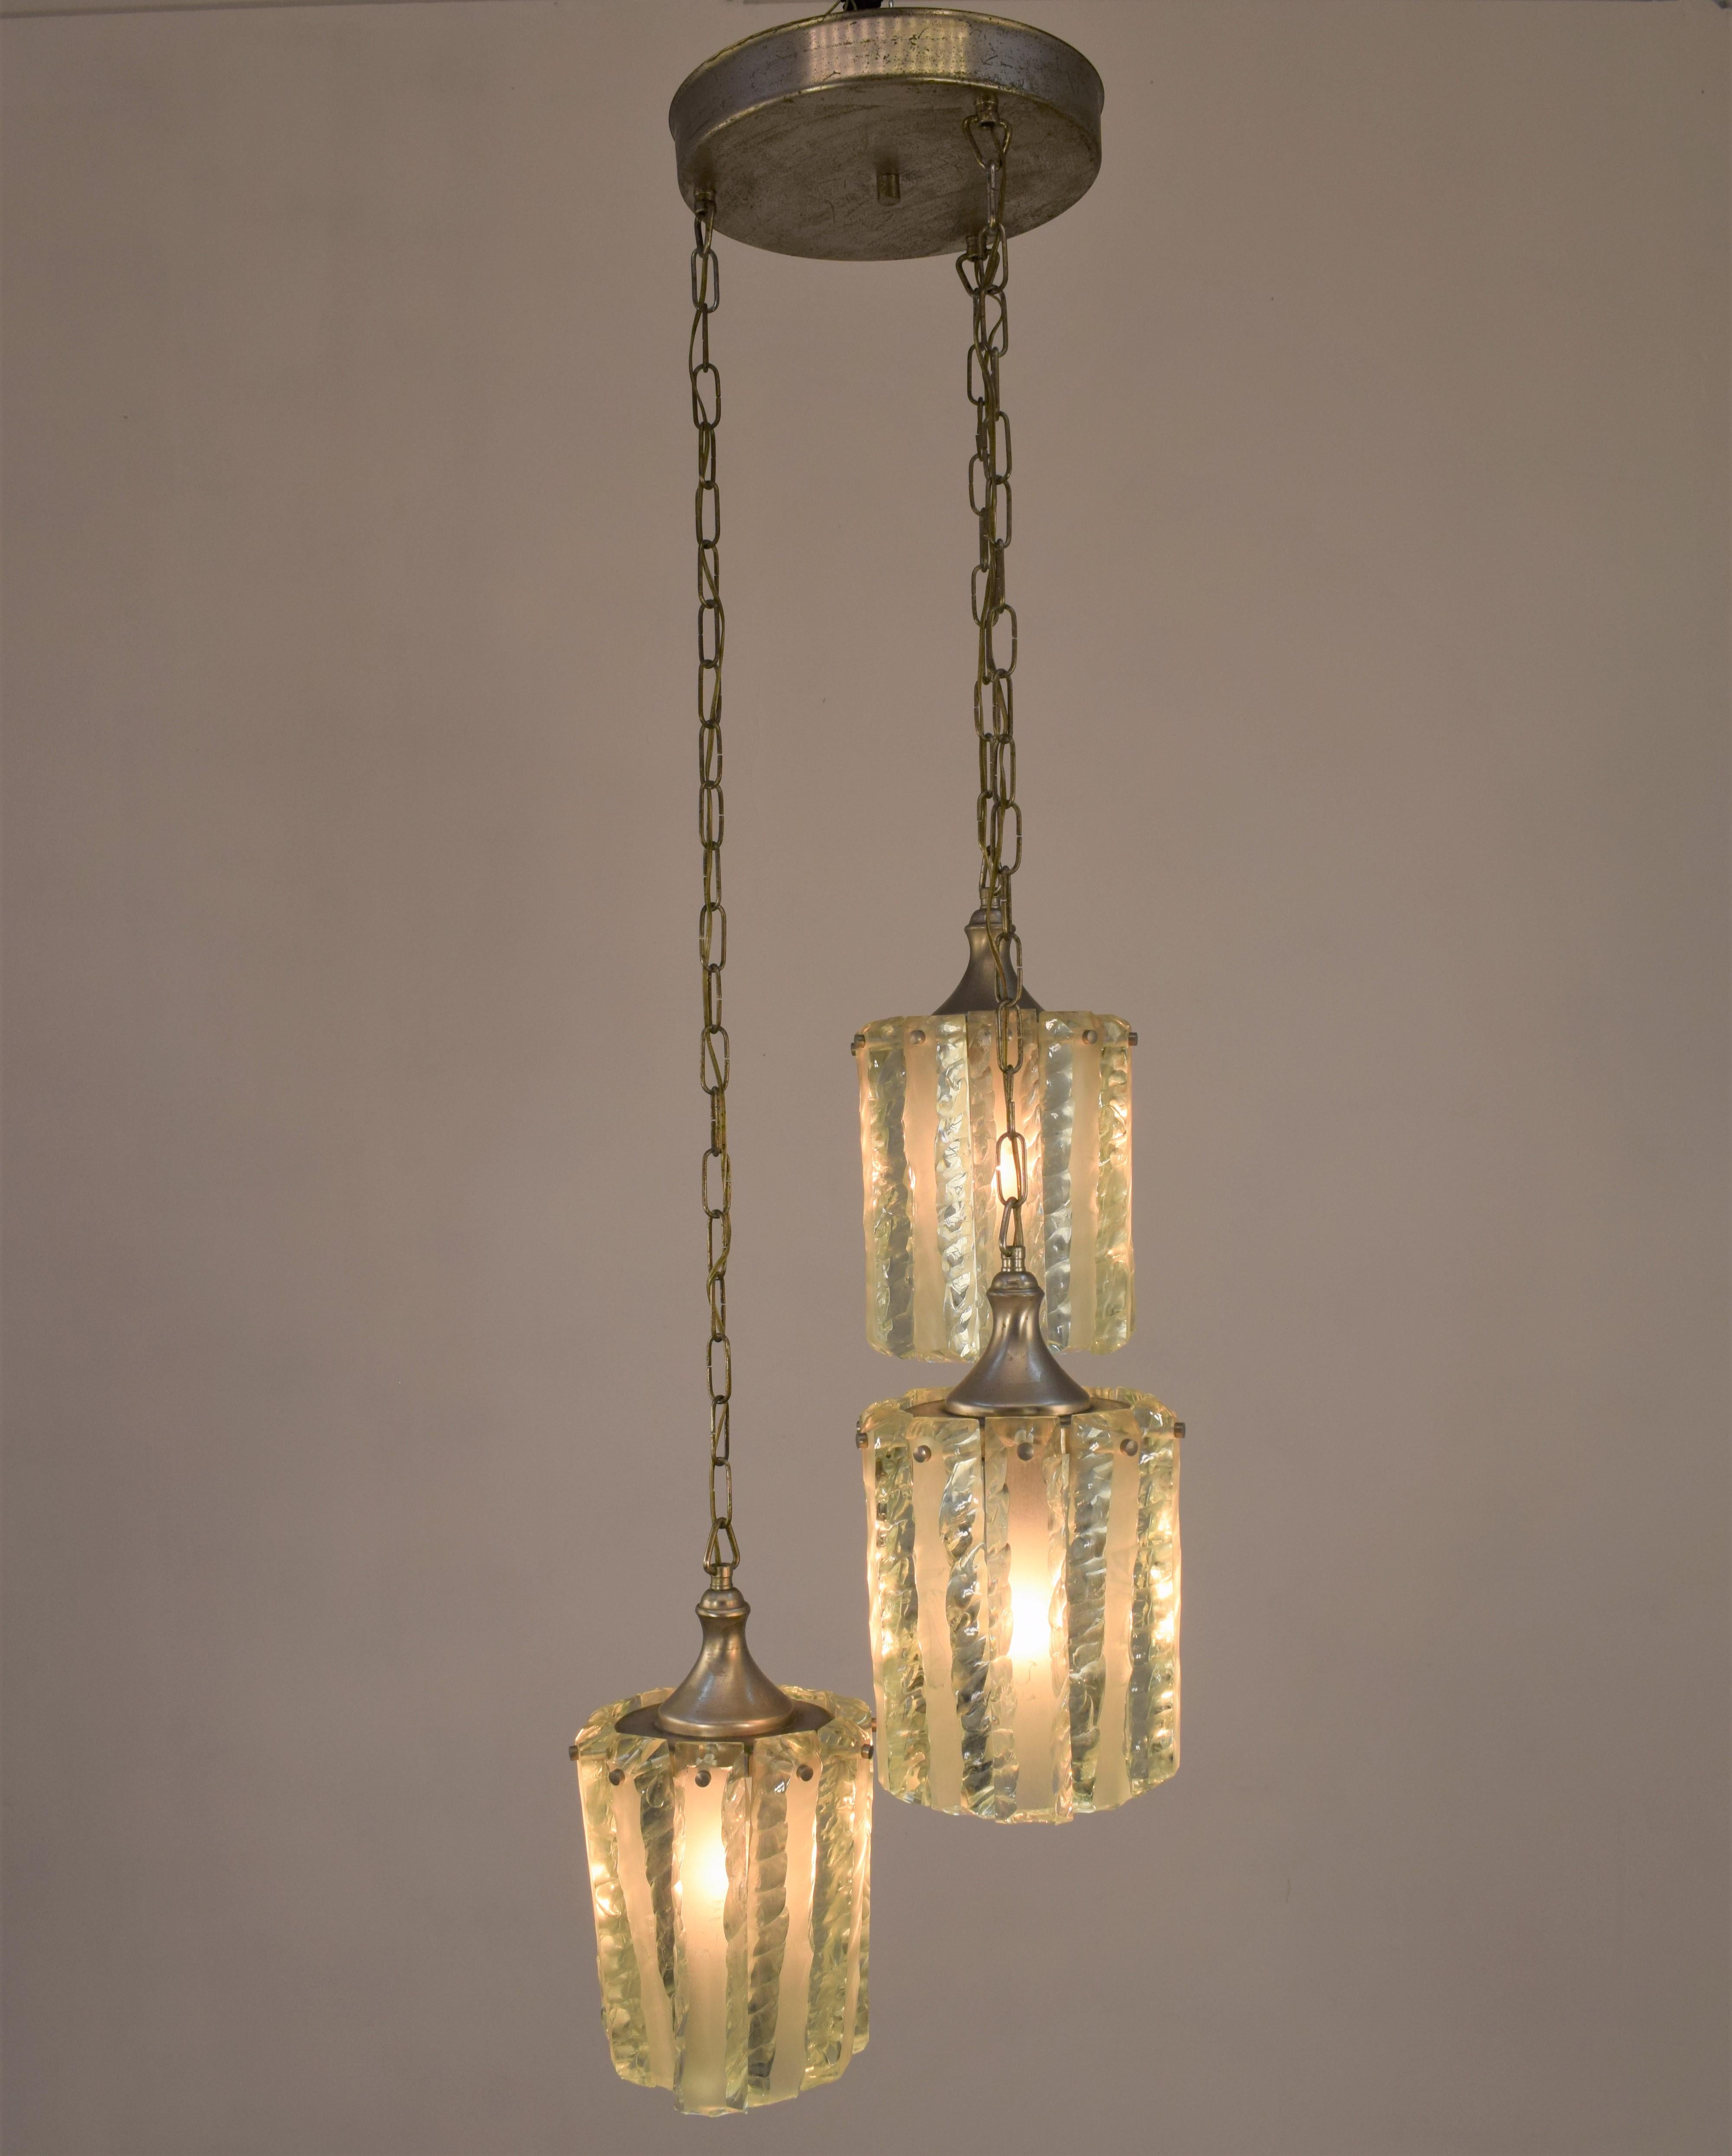 Fontana Arte style, chandelier, 1960s.
Dimensions: H=110 cm; D=35 cm.